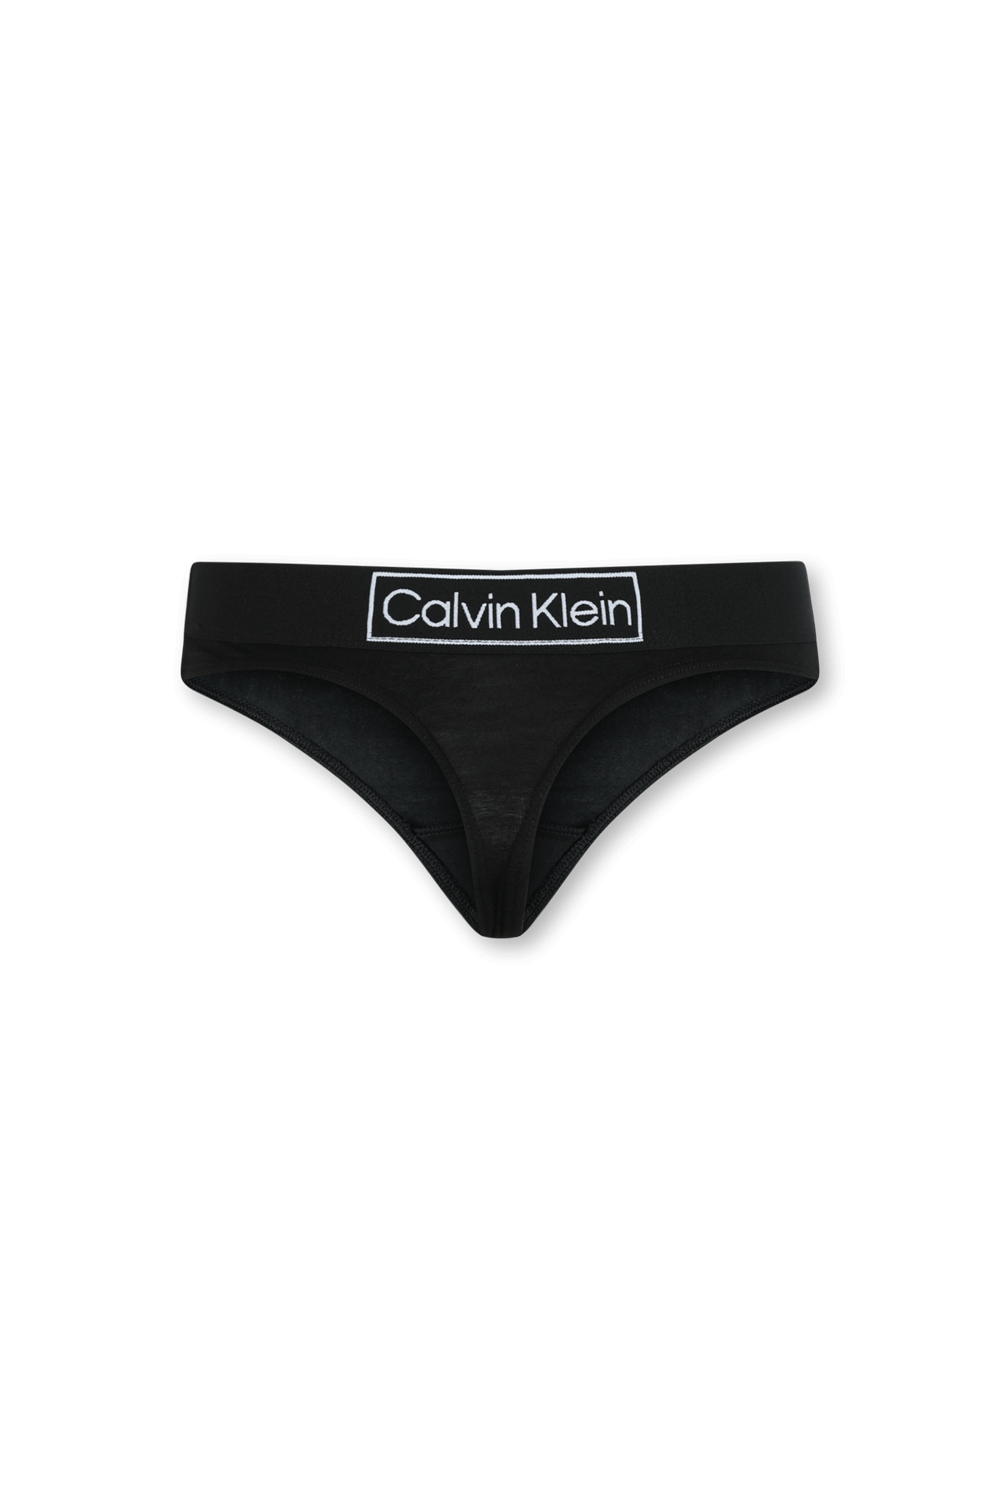 תחתונים חוטיני שחורים עם לוגו עדכני CALVIN KLEIN